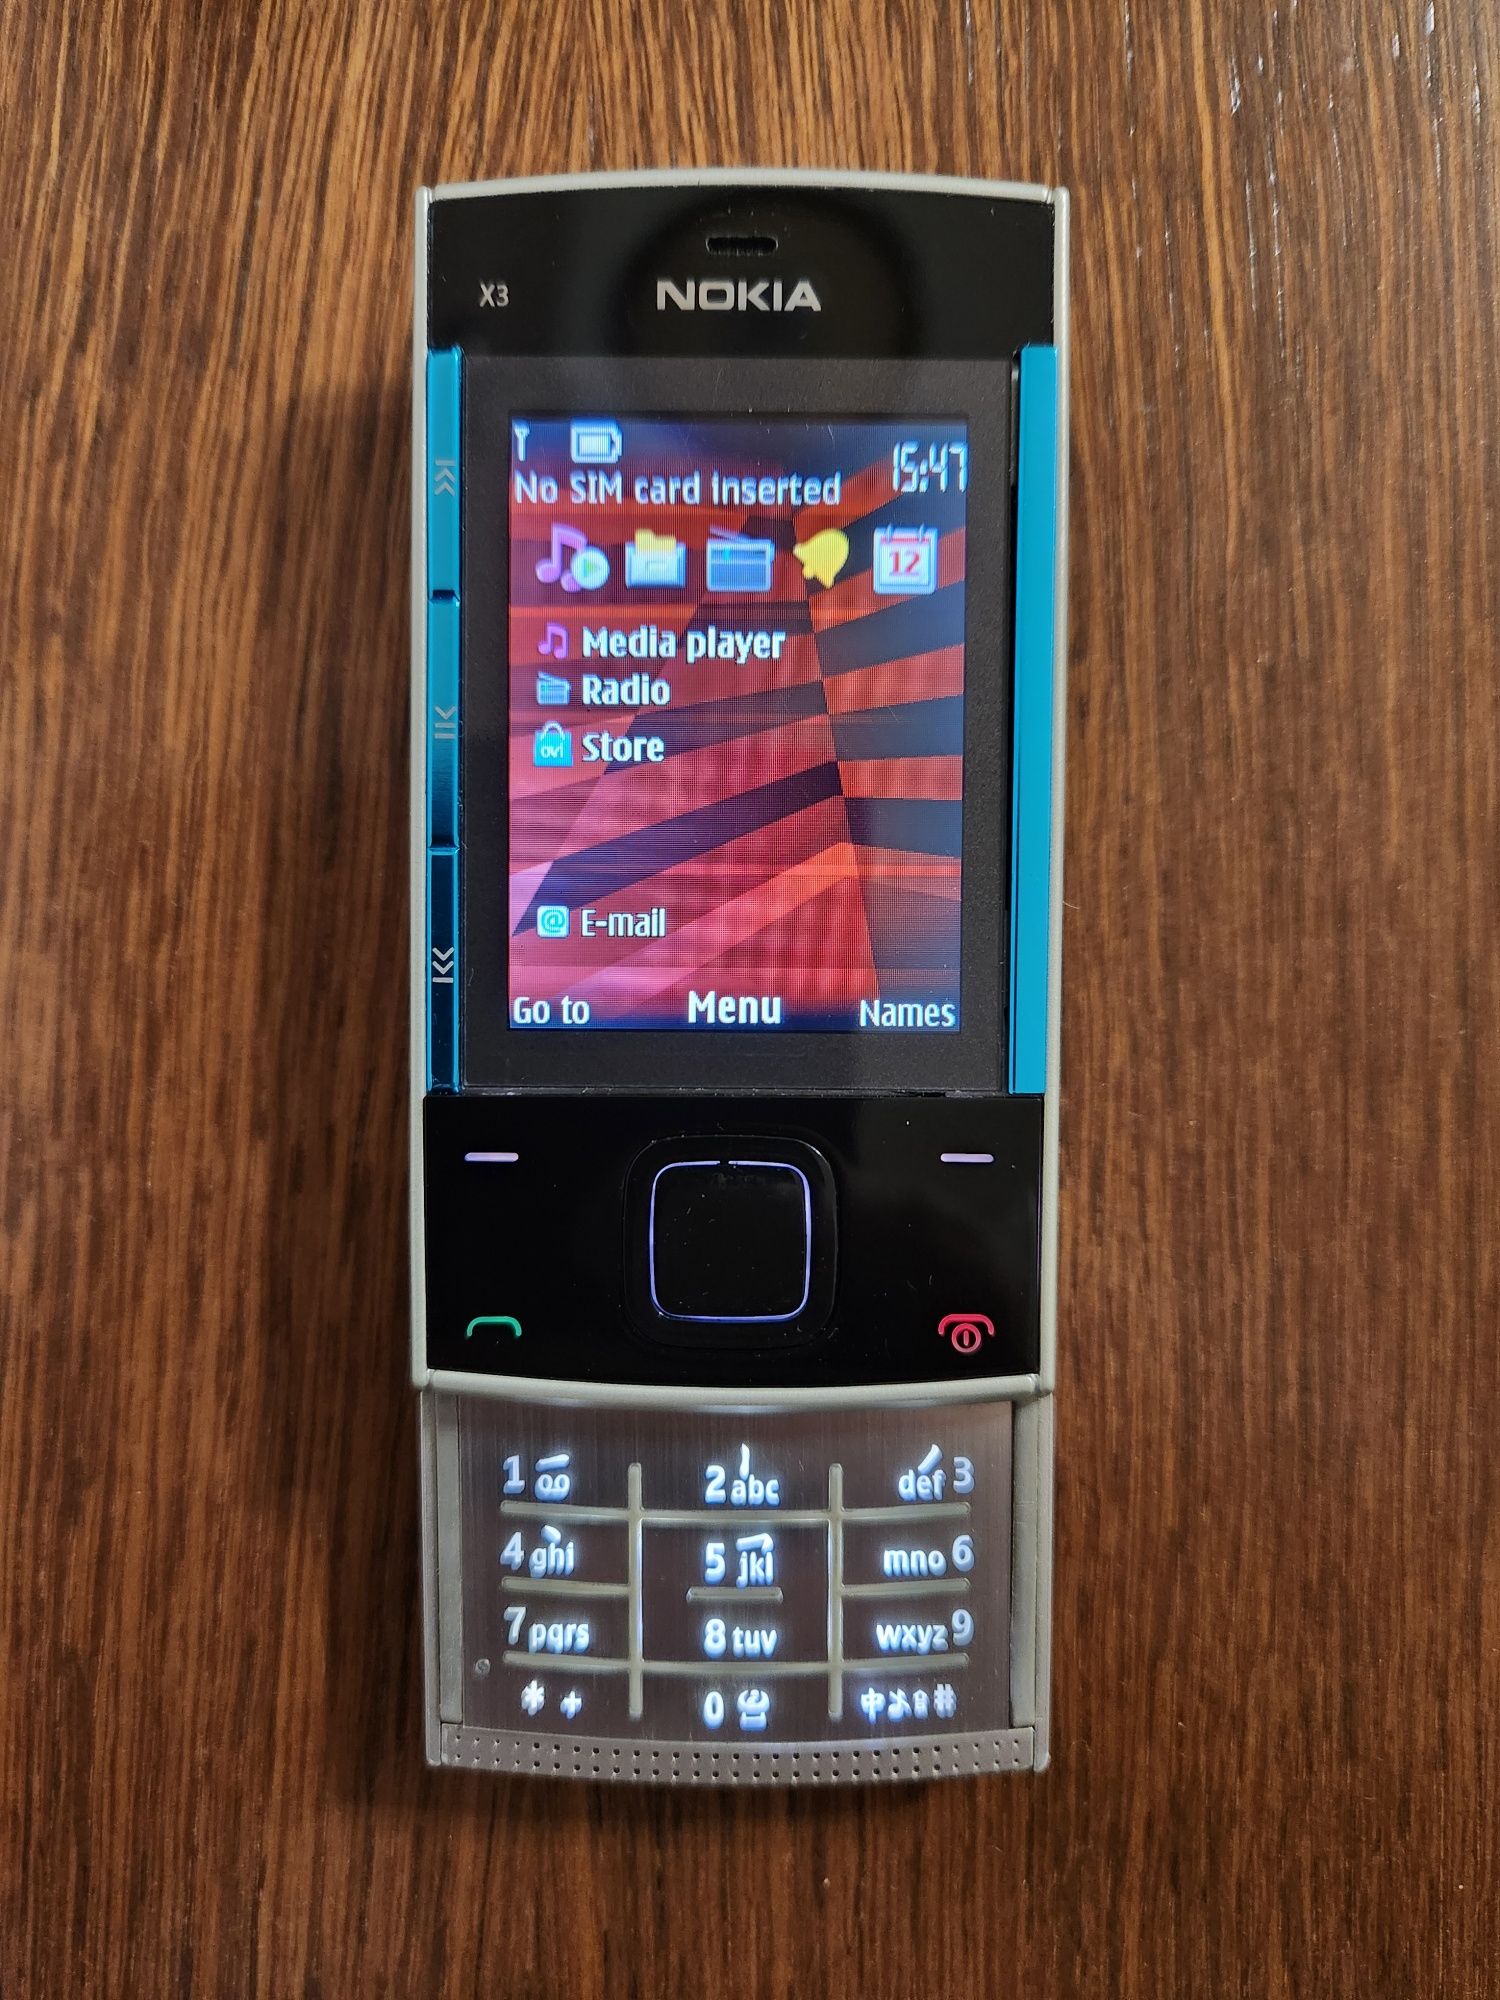 Nokia X3-00 - Complet functional, la cutie